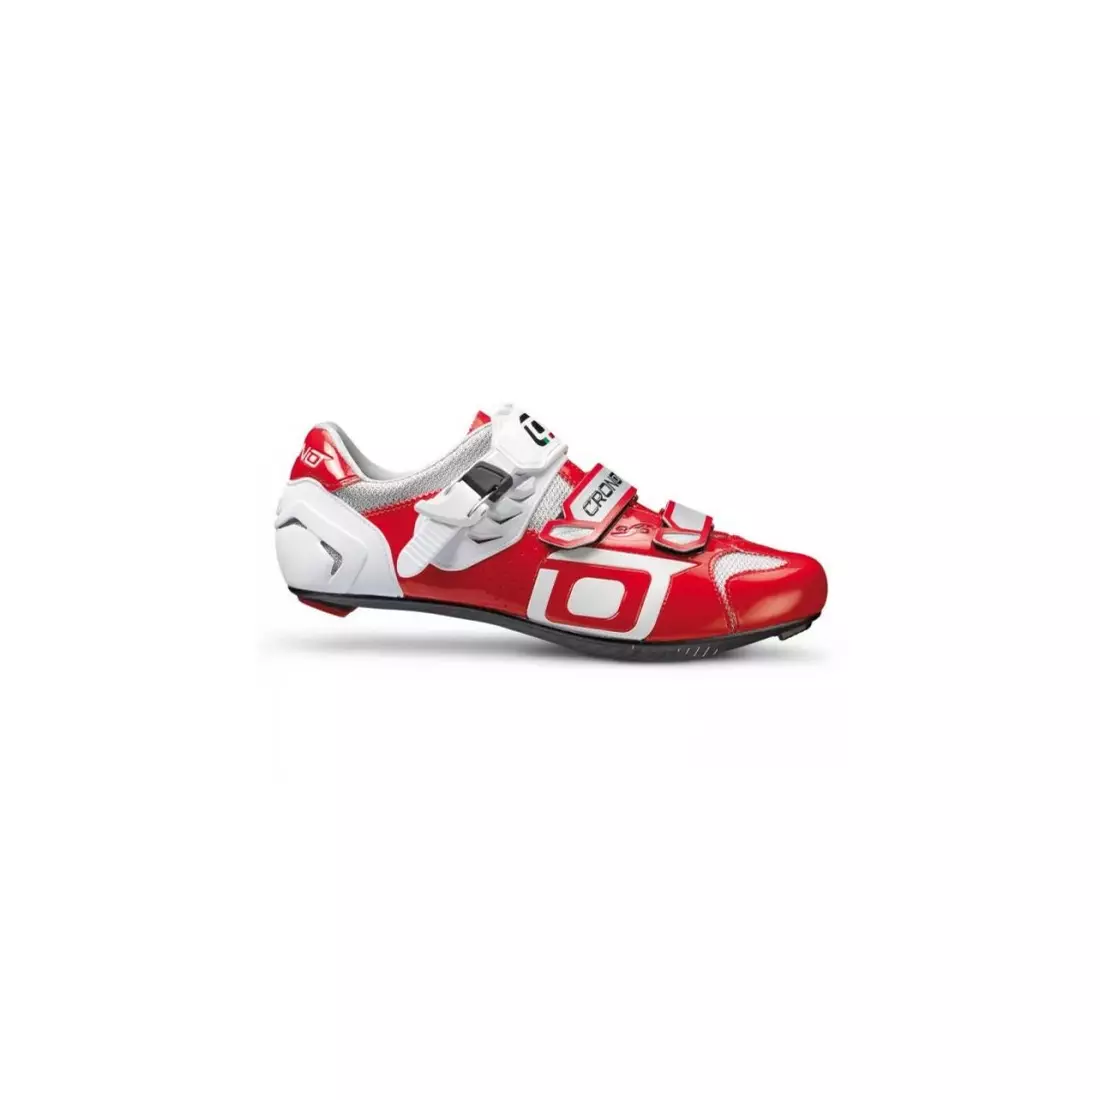 CRONO CLONE NYLON - országúti kerékpáros cipő - szín: piros